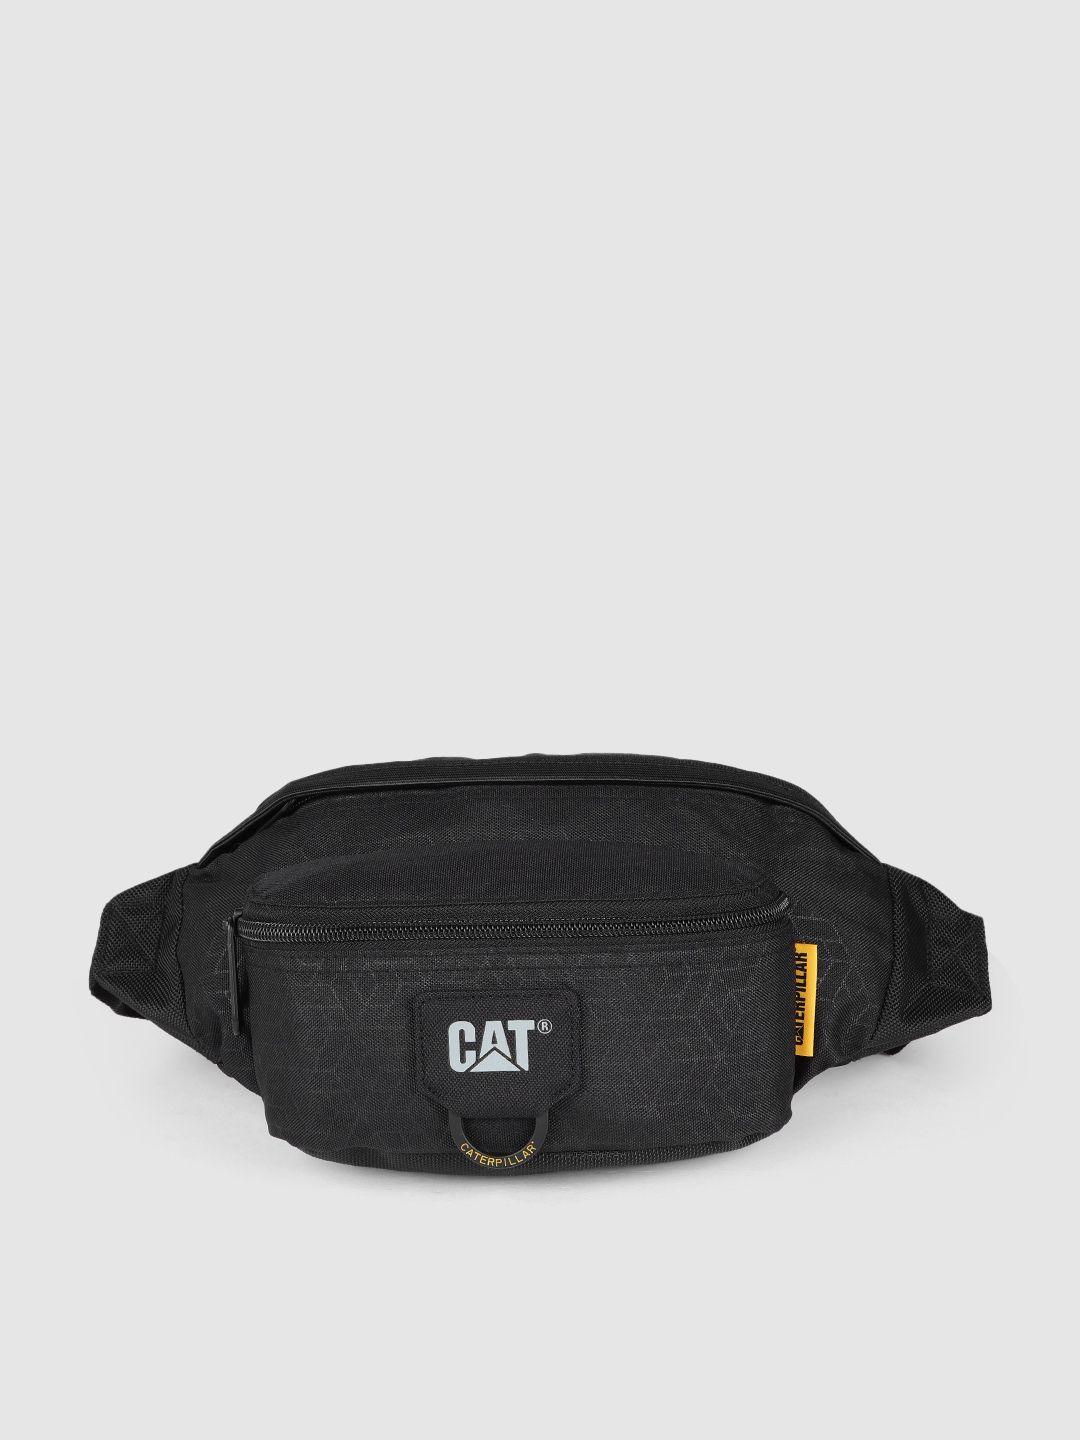 cat unisex black 2 liter waist pouch